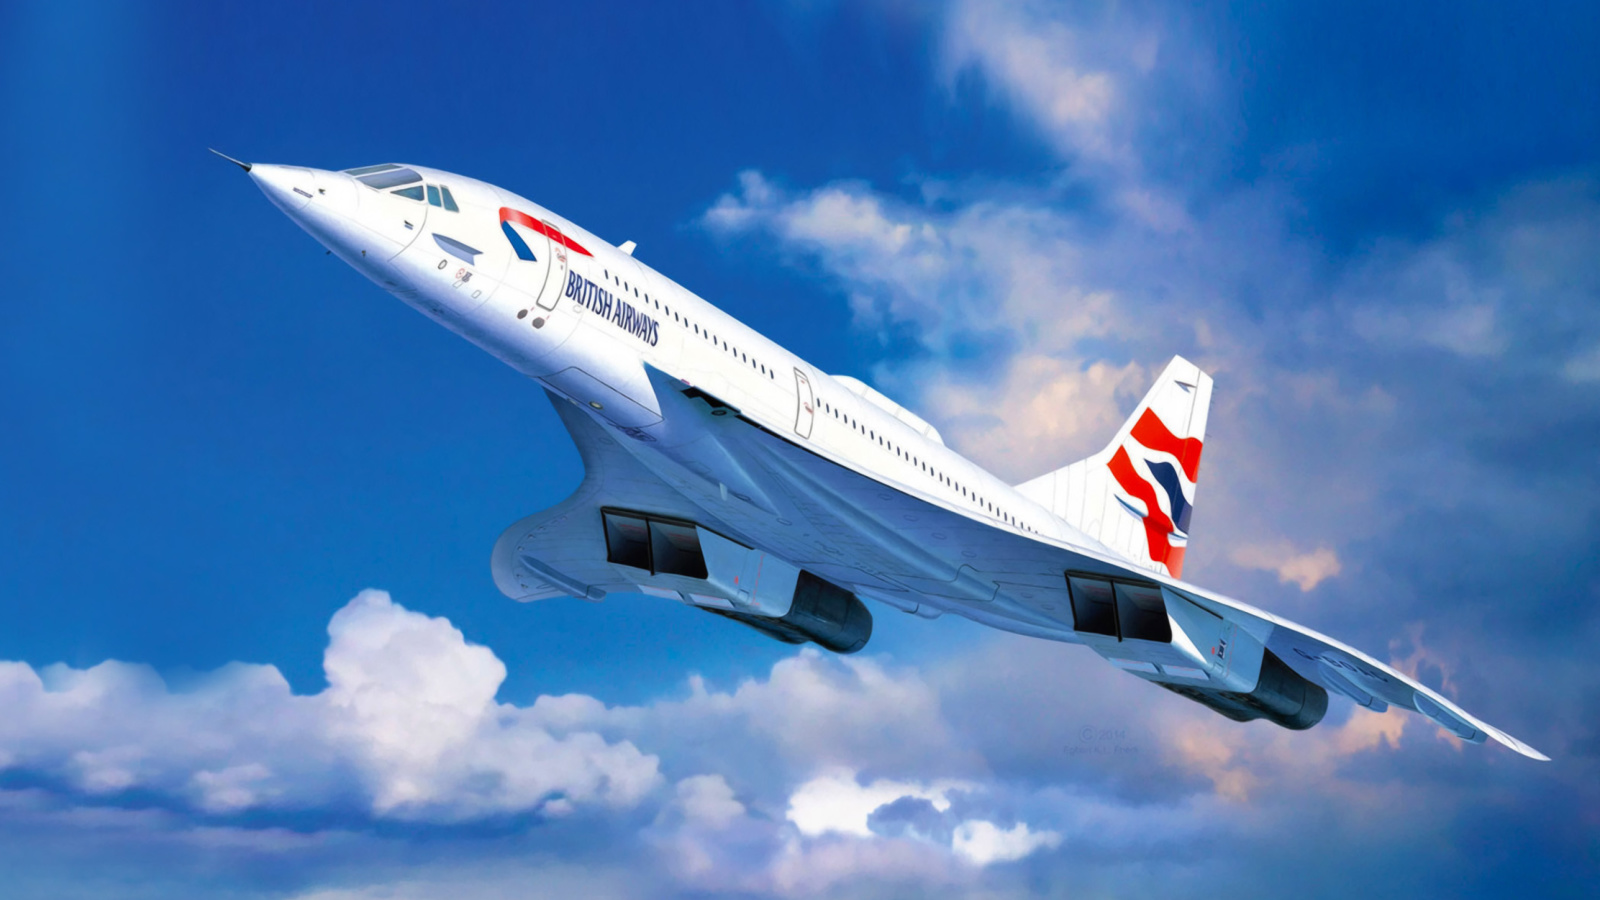 Concorde British Airways wallpaper 1600x900